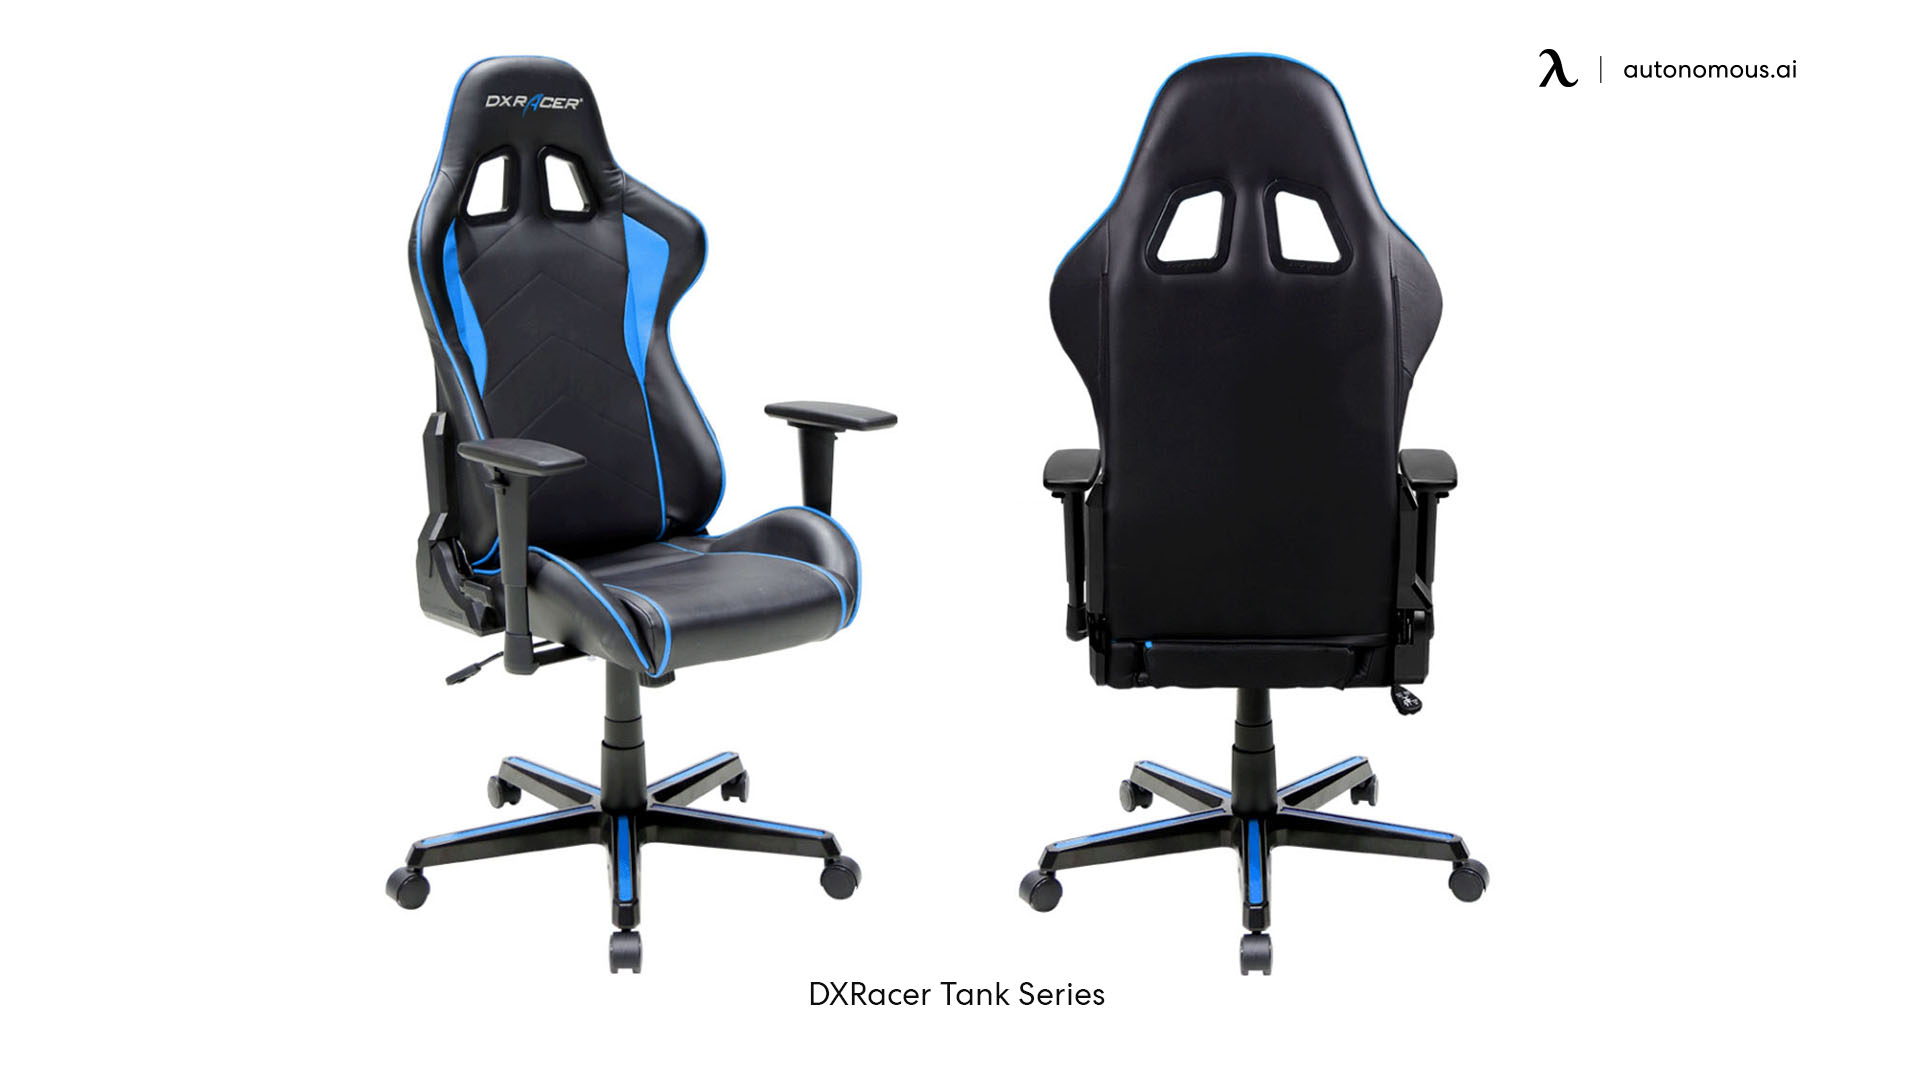 DXRacer Tank Series tall office chair